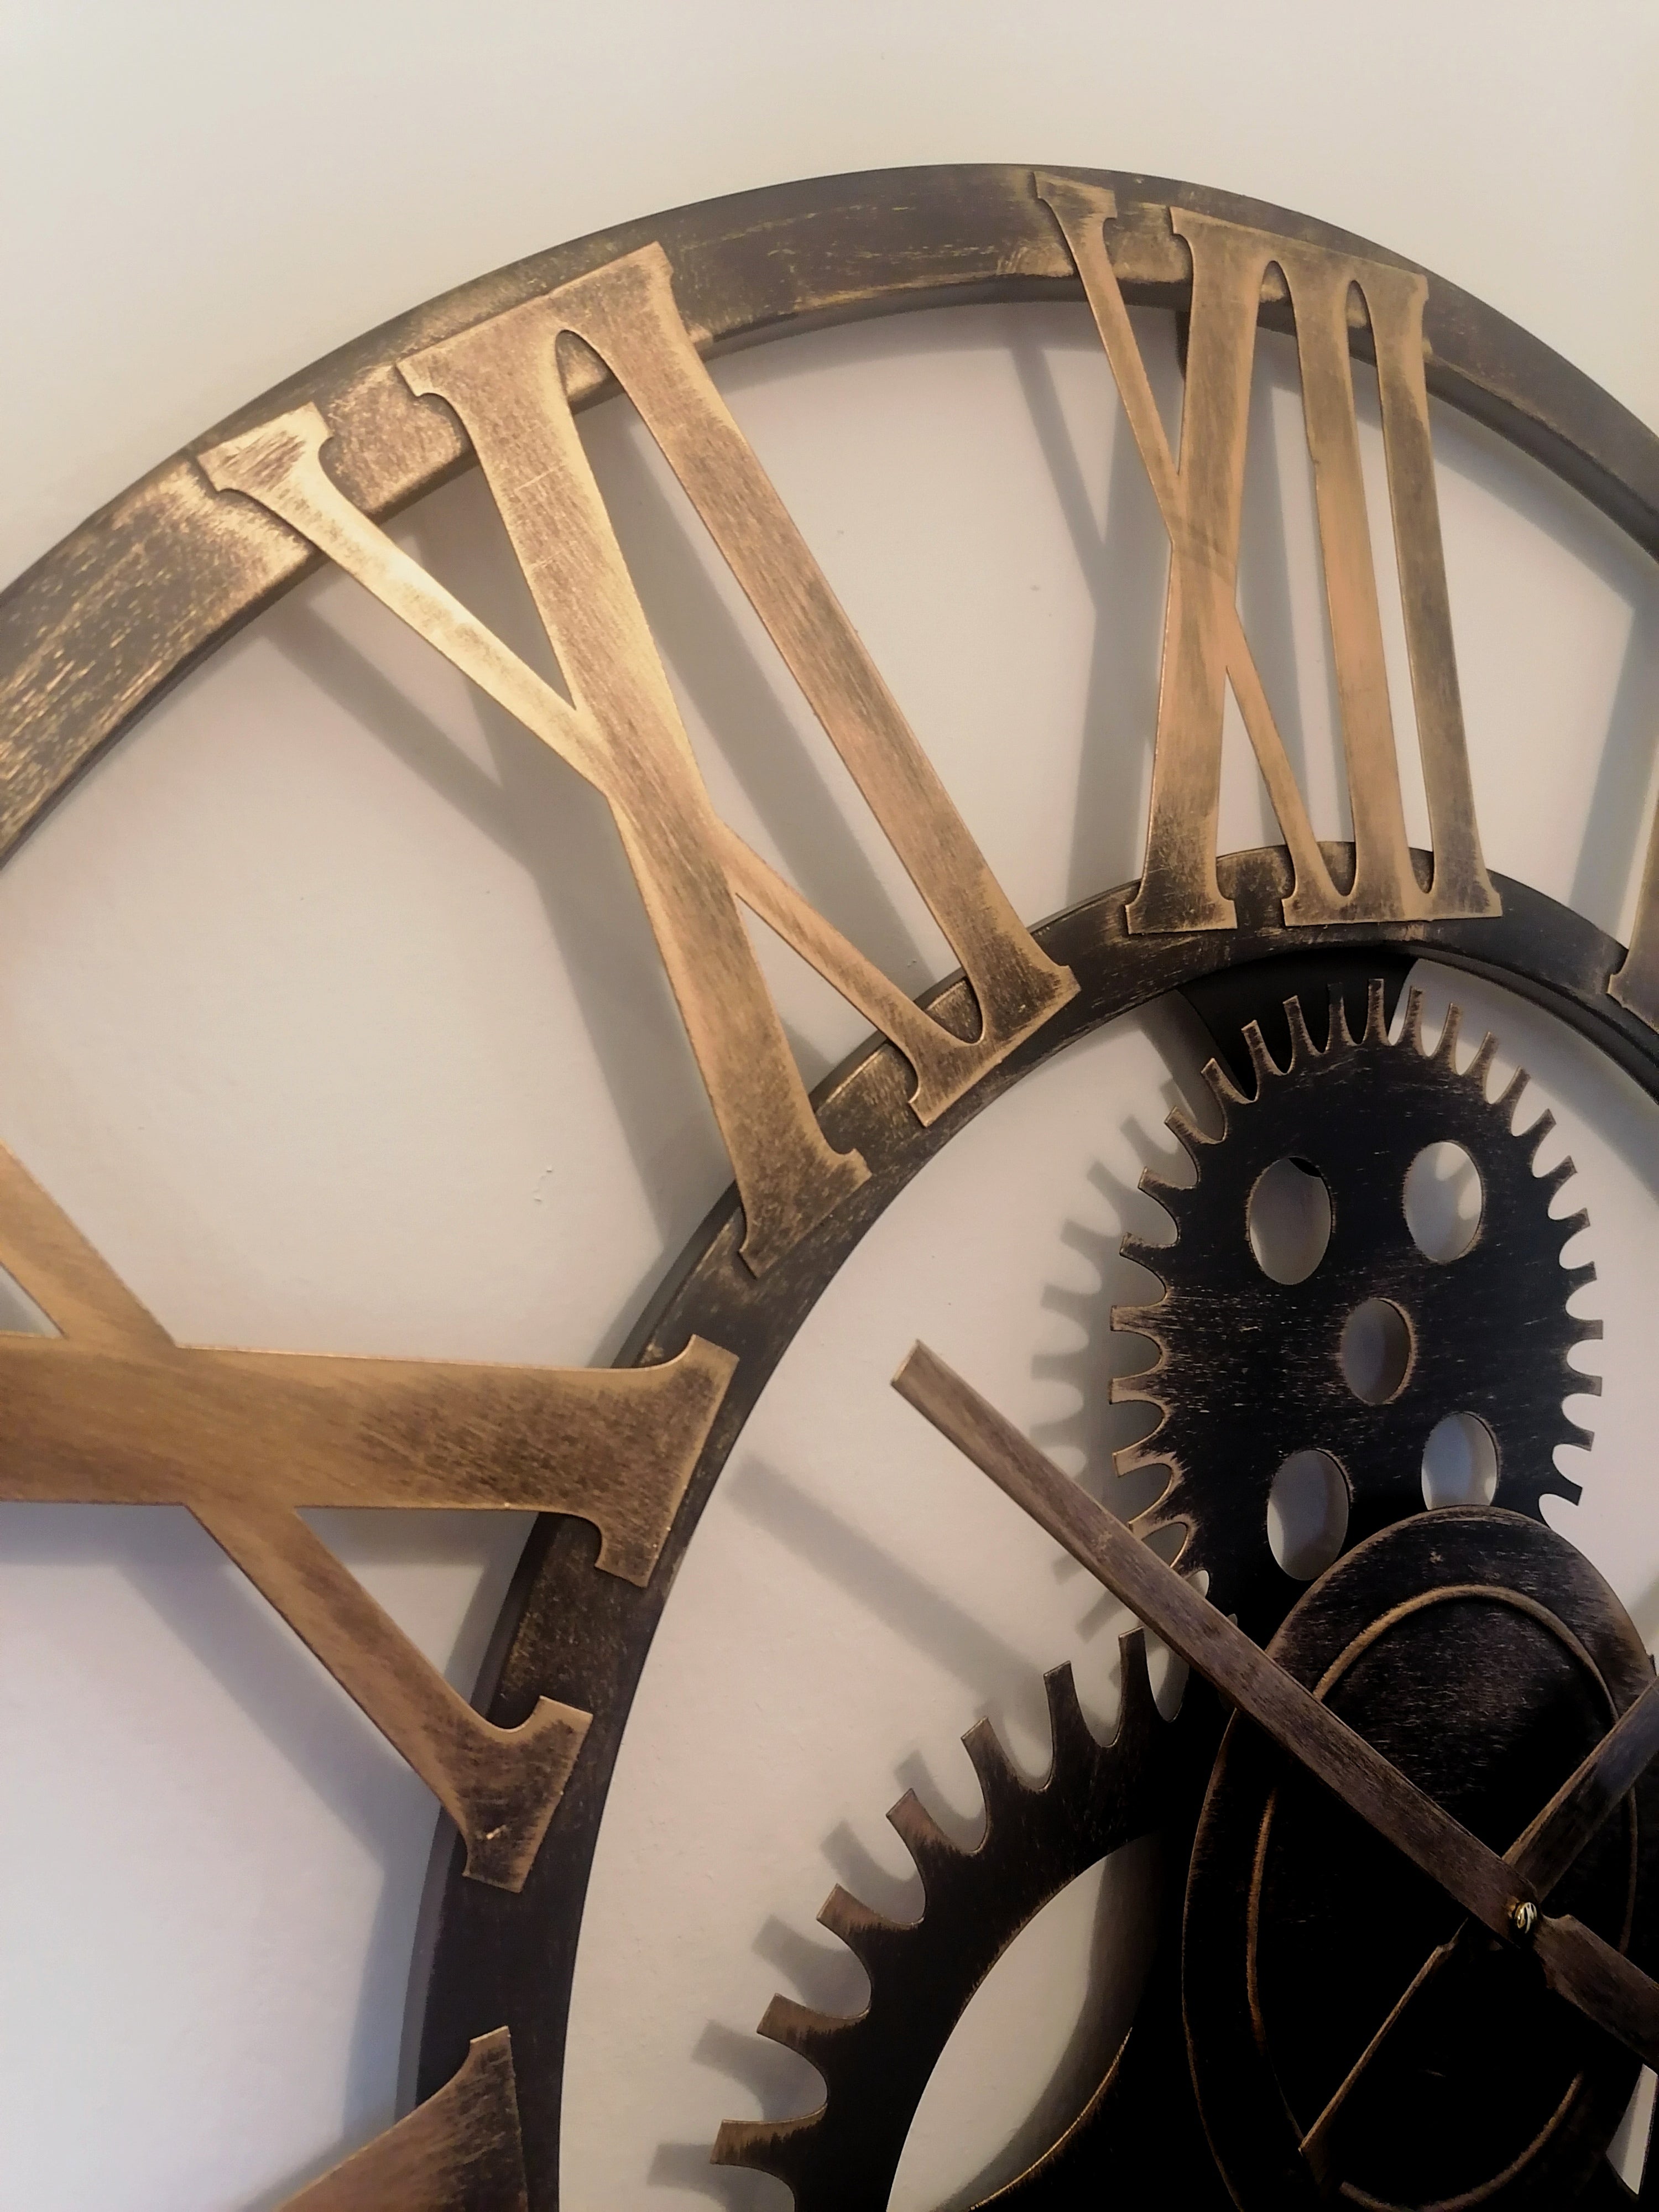 76cm - 100% Metal Large Skeleton Gear Wall Clock - Rustic Gold - Industrial Mechanical Look